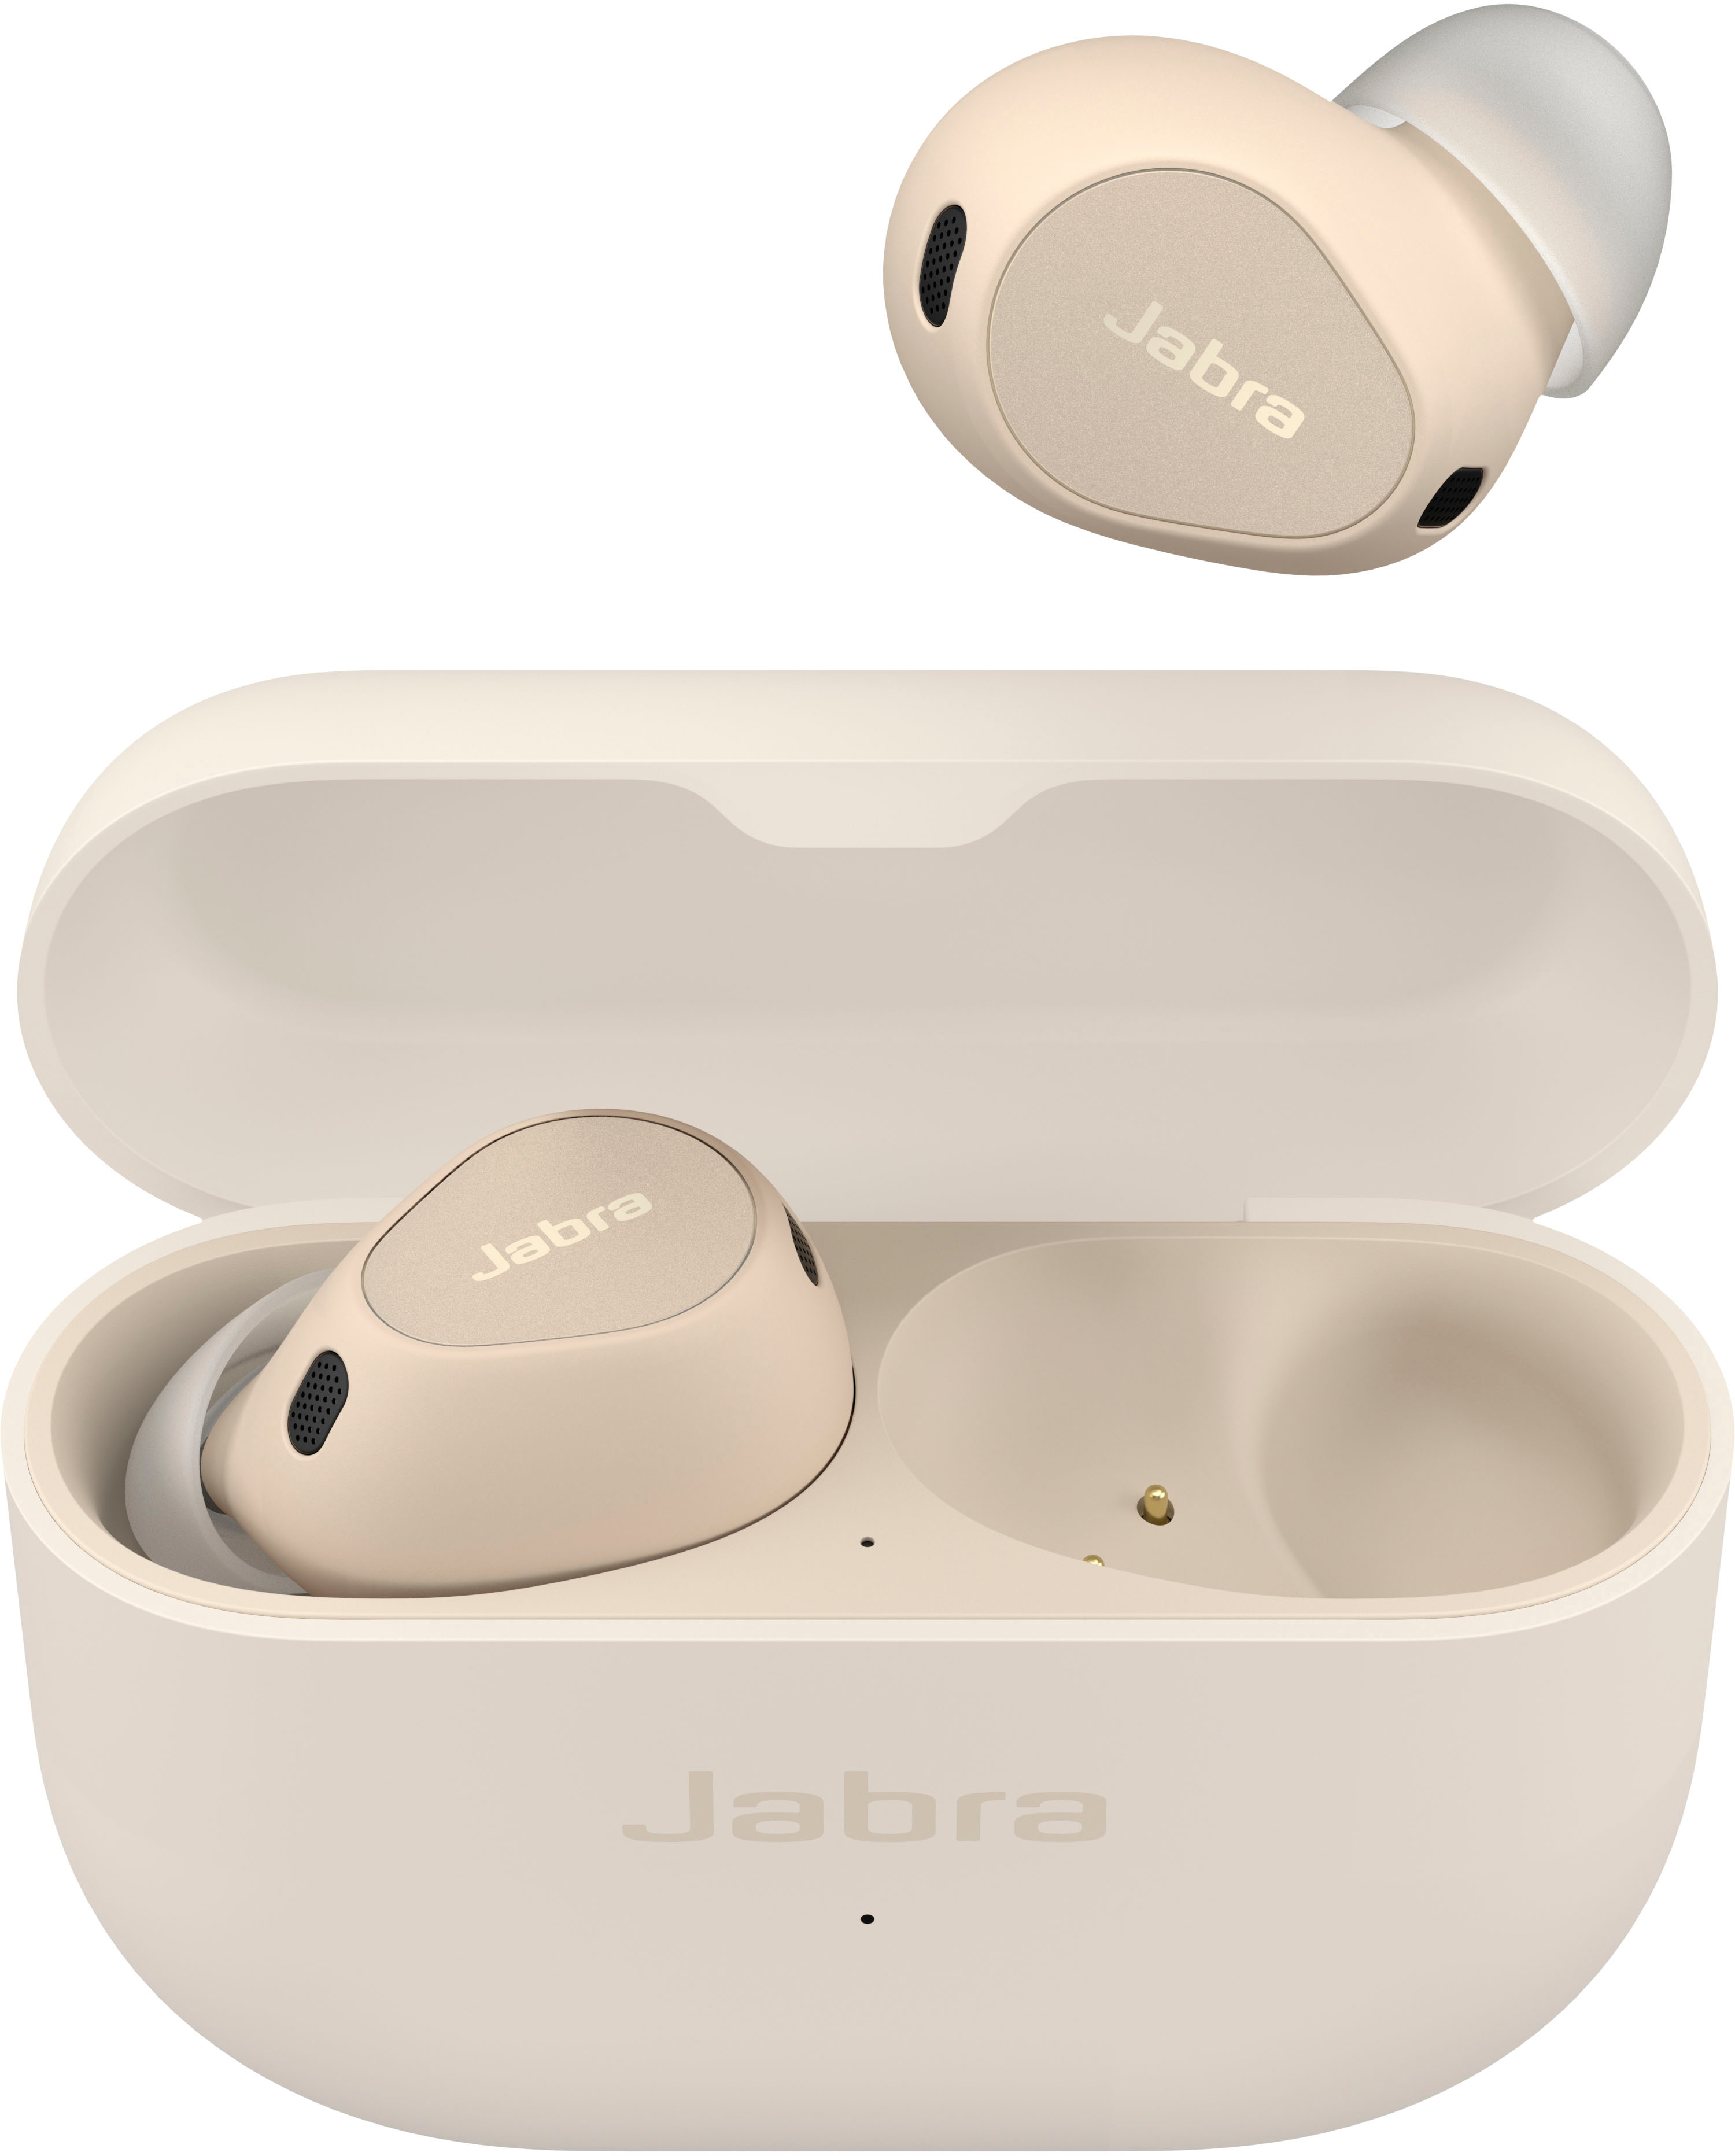 Jabra Elite 4 True Wireless Noise Cancelling In-ear Headphones Lilac  100-99183003-99 - Best Buy